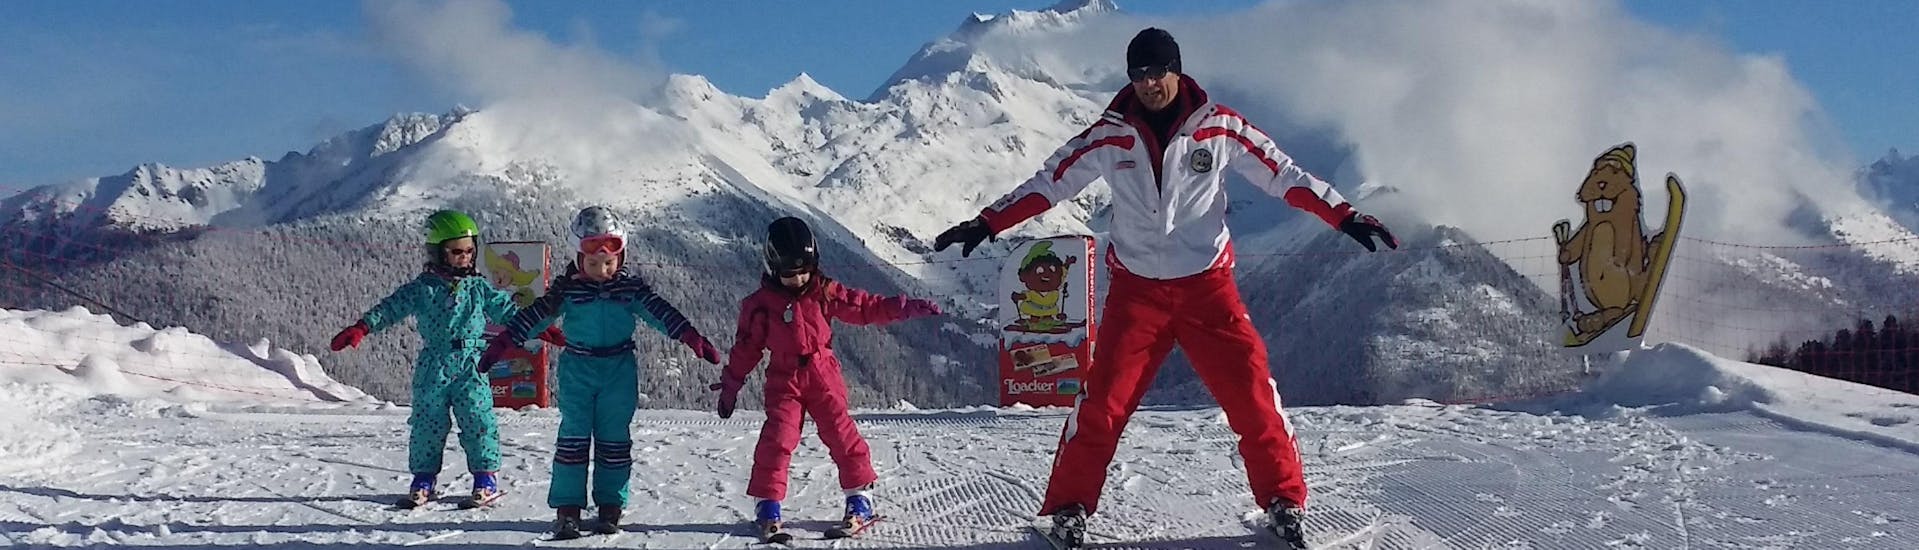 Skileraren met kinderen in Speikboden Campo Tures - Zand in Taufers tijdens een kinderskiles voor alle niveaus.